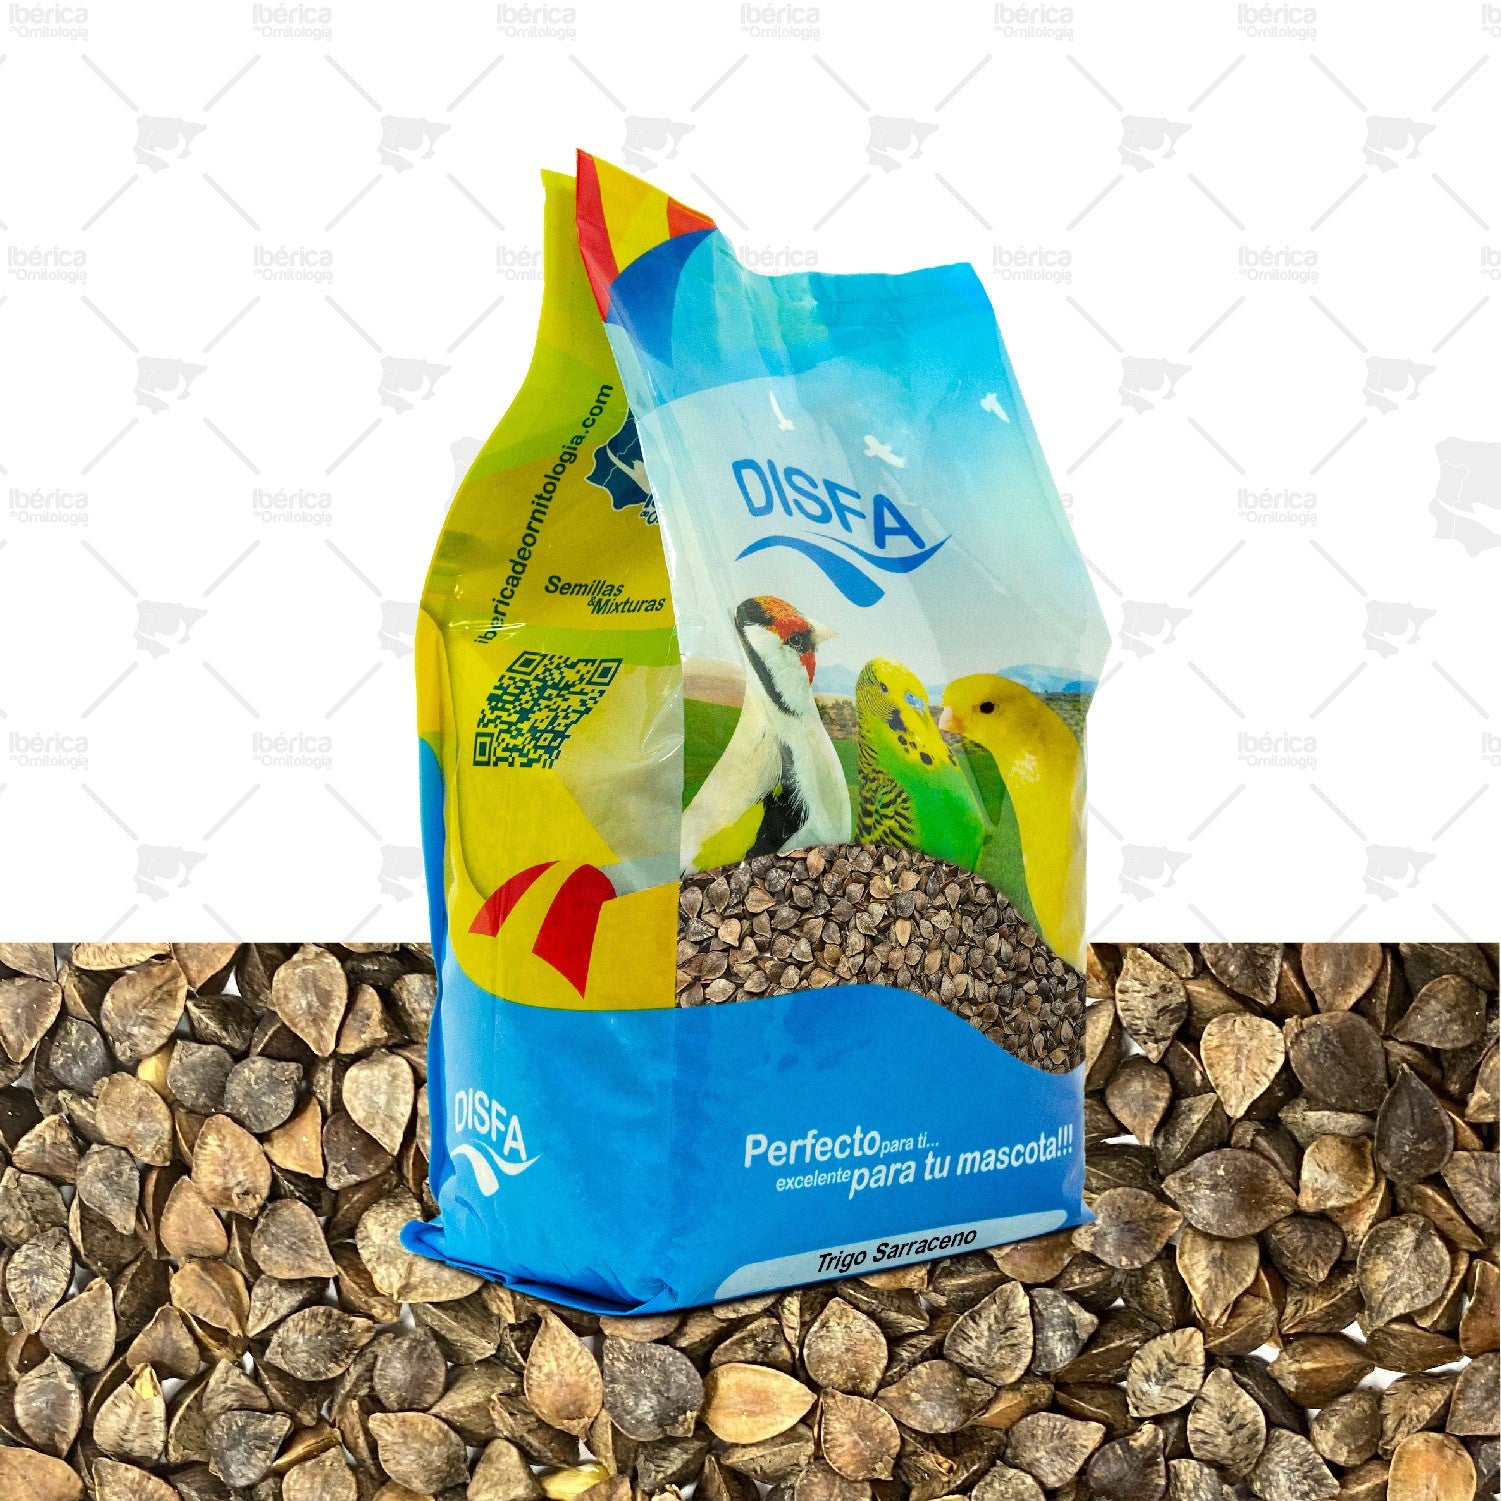 Trigo Sarraceno (Disfa), semillas para cría de aves rica en carbohidratos, grasas de calidad, proteínas y vitaminas ibericadeornitologia